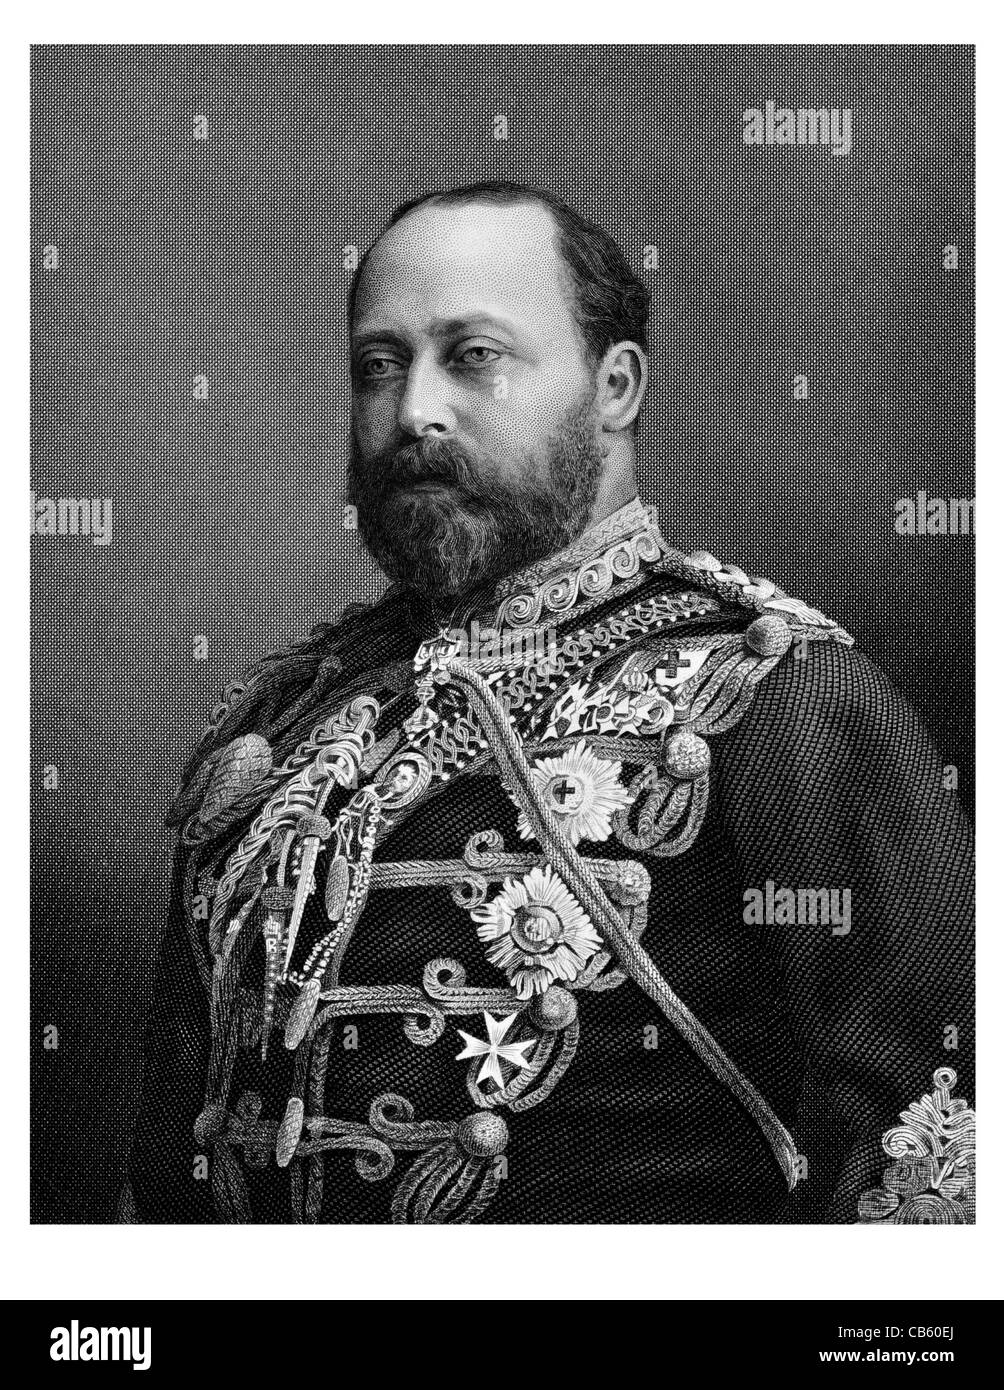 Édouard VII 1841 1910 Roi souverain britannique Chambre Saxe COBOURG GOTHA royal regal règle souveraine potentat impérial monarque couronné Banque D'Images